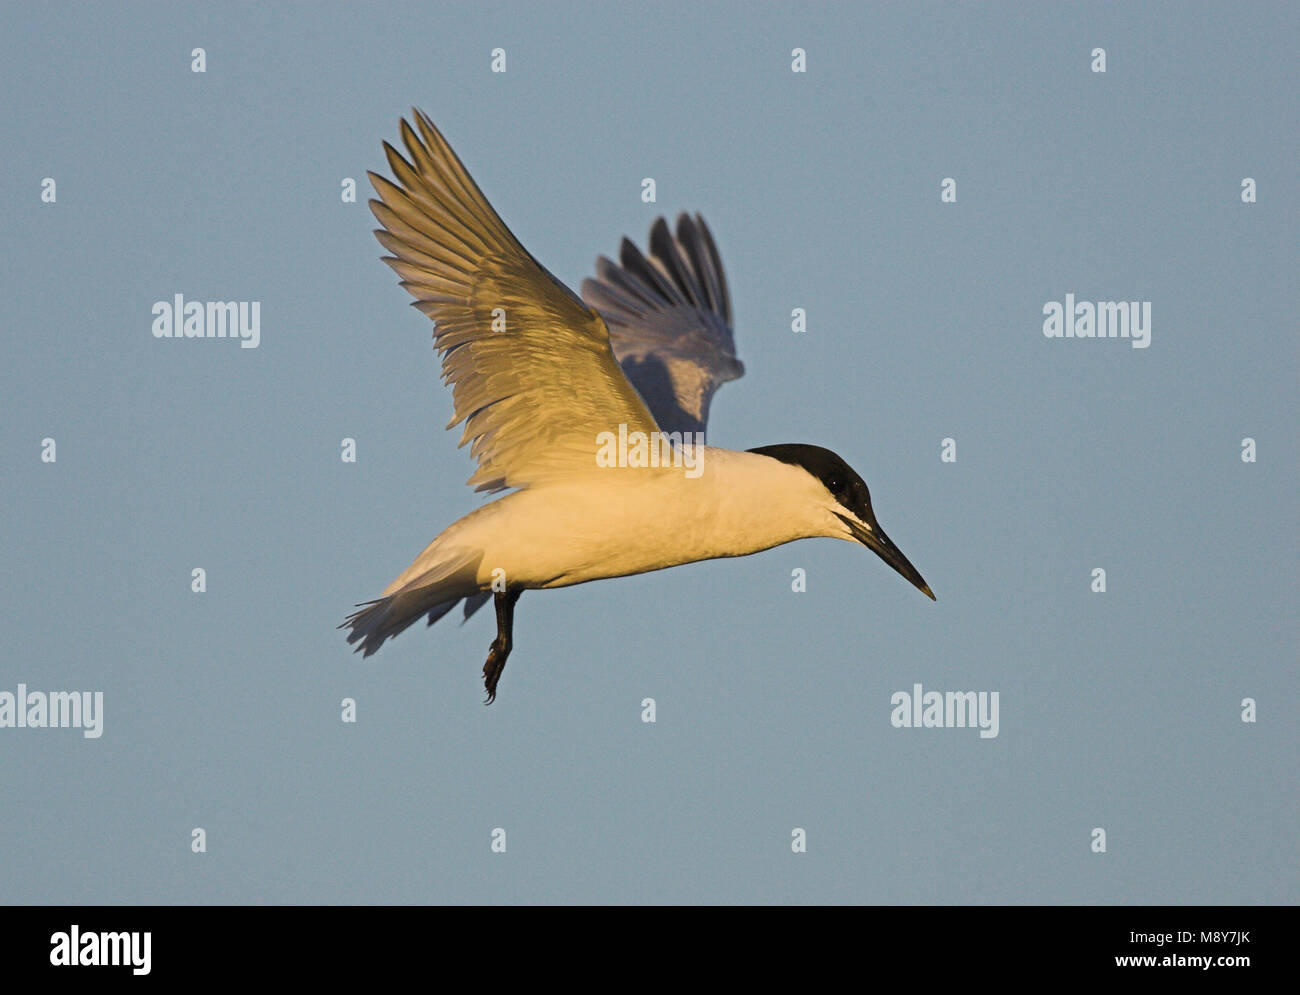 Grote stern in vlucht; Sandwich Tern in flight Stock Photo